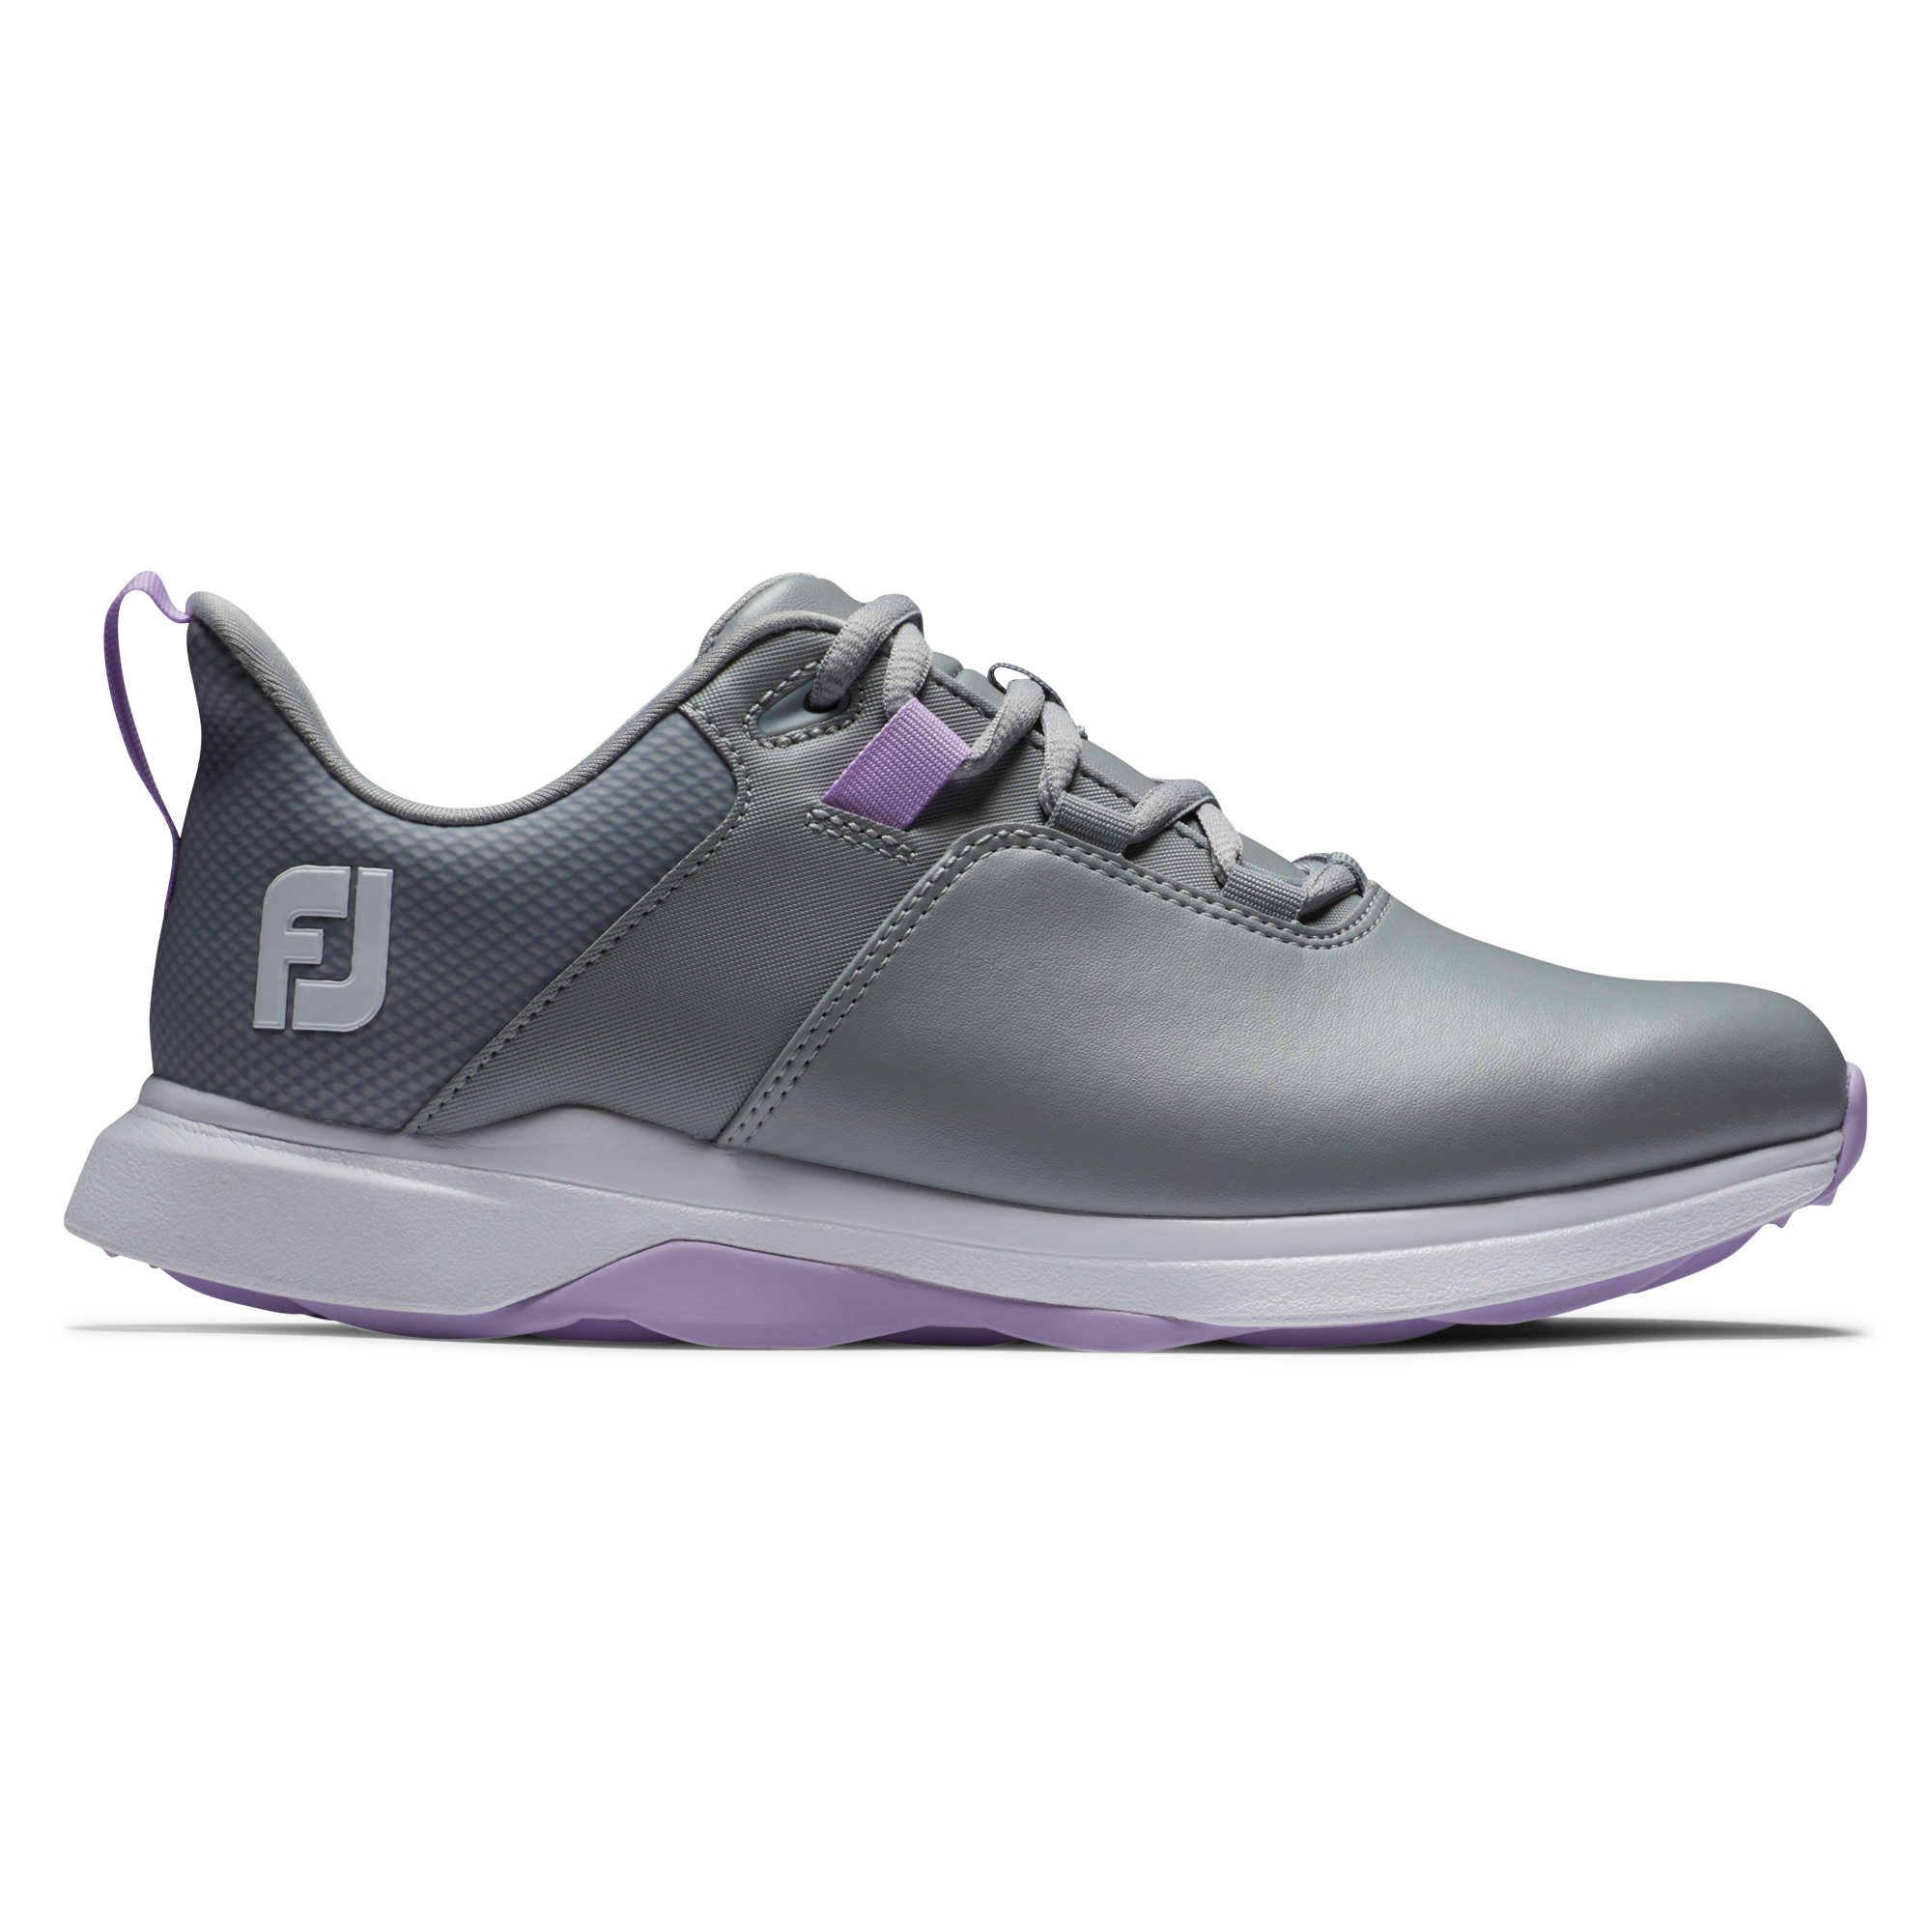 FootJoy ProLite dámské golfové boty, šedé, vel. 6 UK